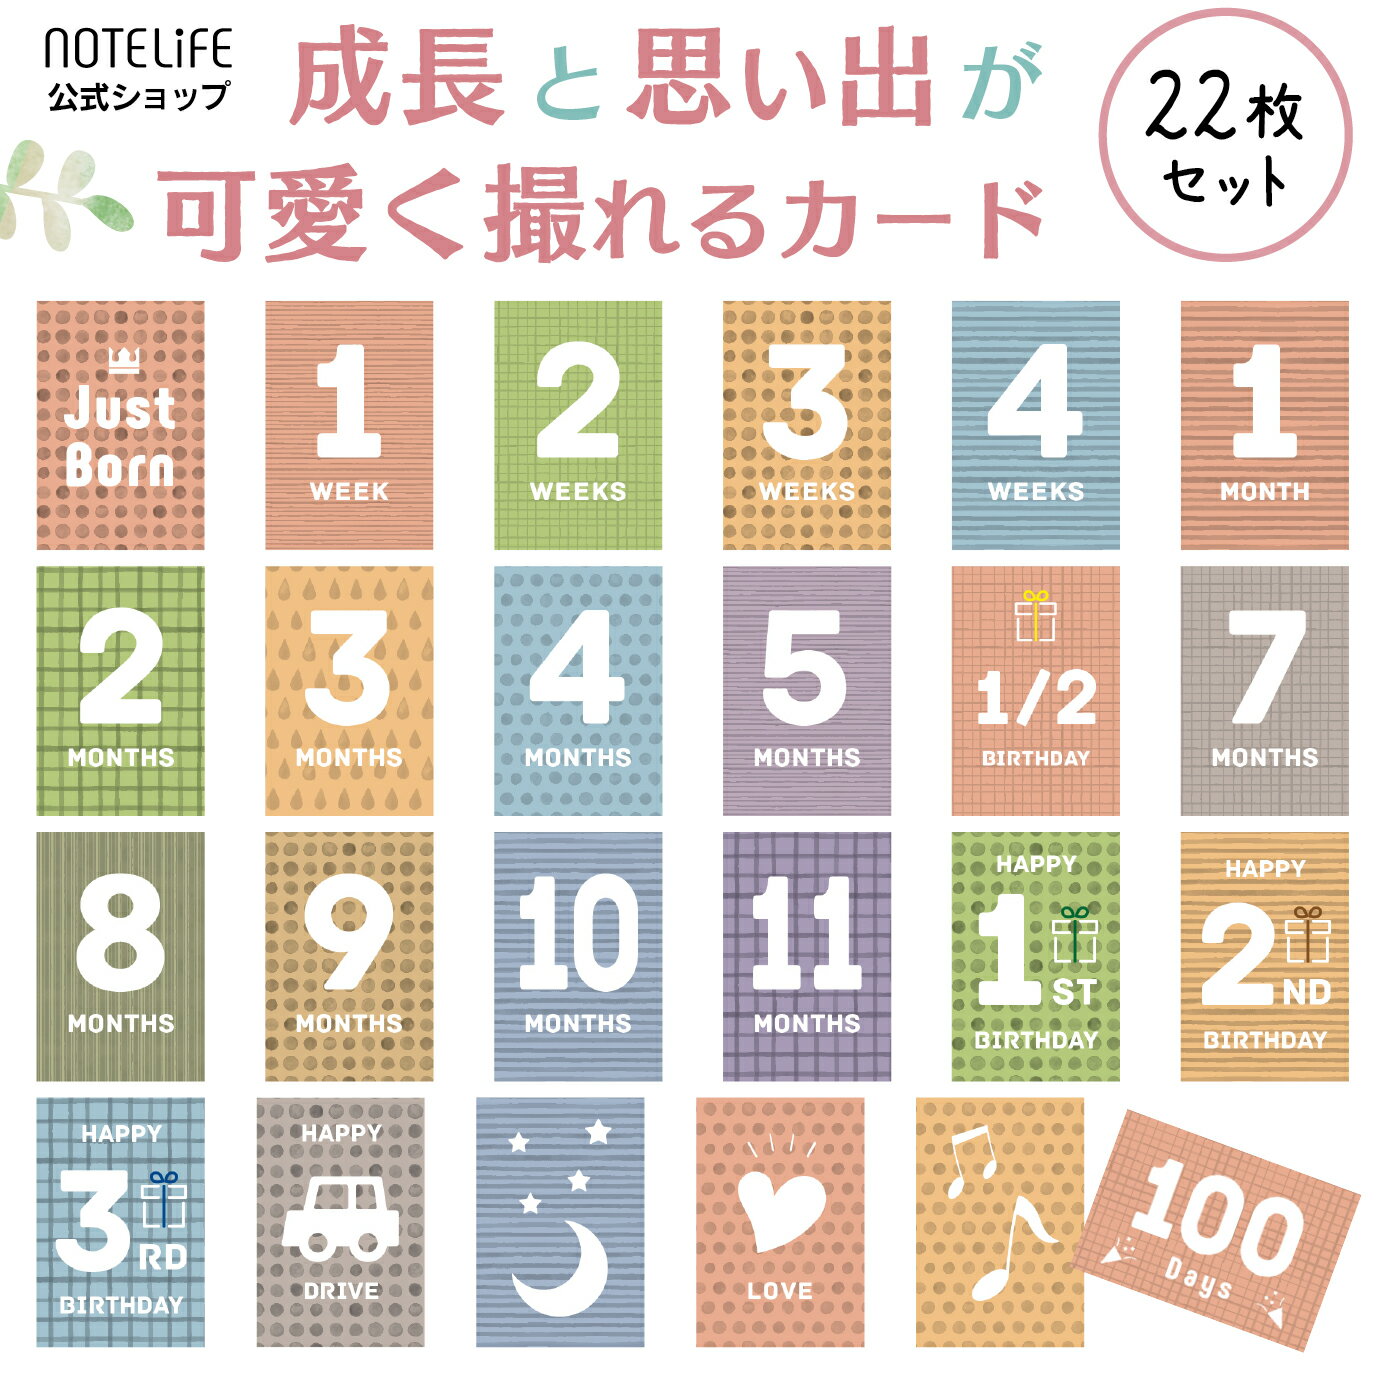 マンスリーカード ベビー 22枚セット（裏面にメッセージが書き込める仕様） マンスリーフォト 月齢フォト 月齢カード ノートライフ 日本製 くすみカラー